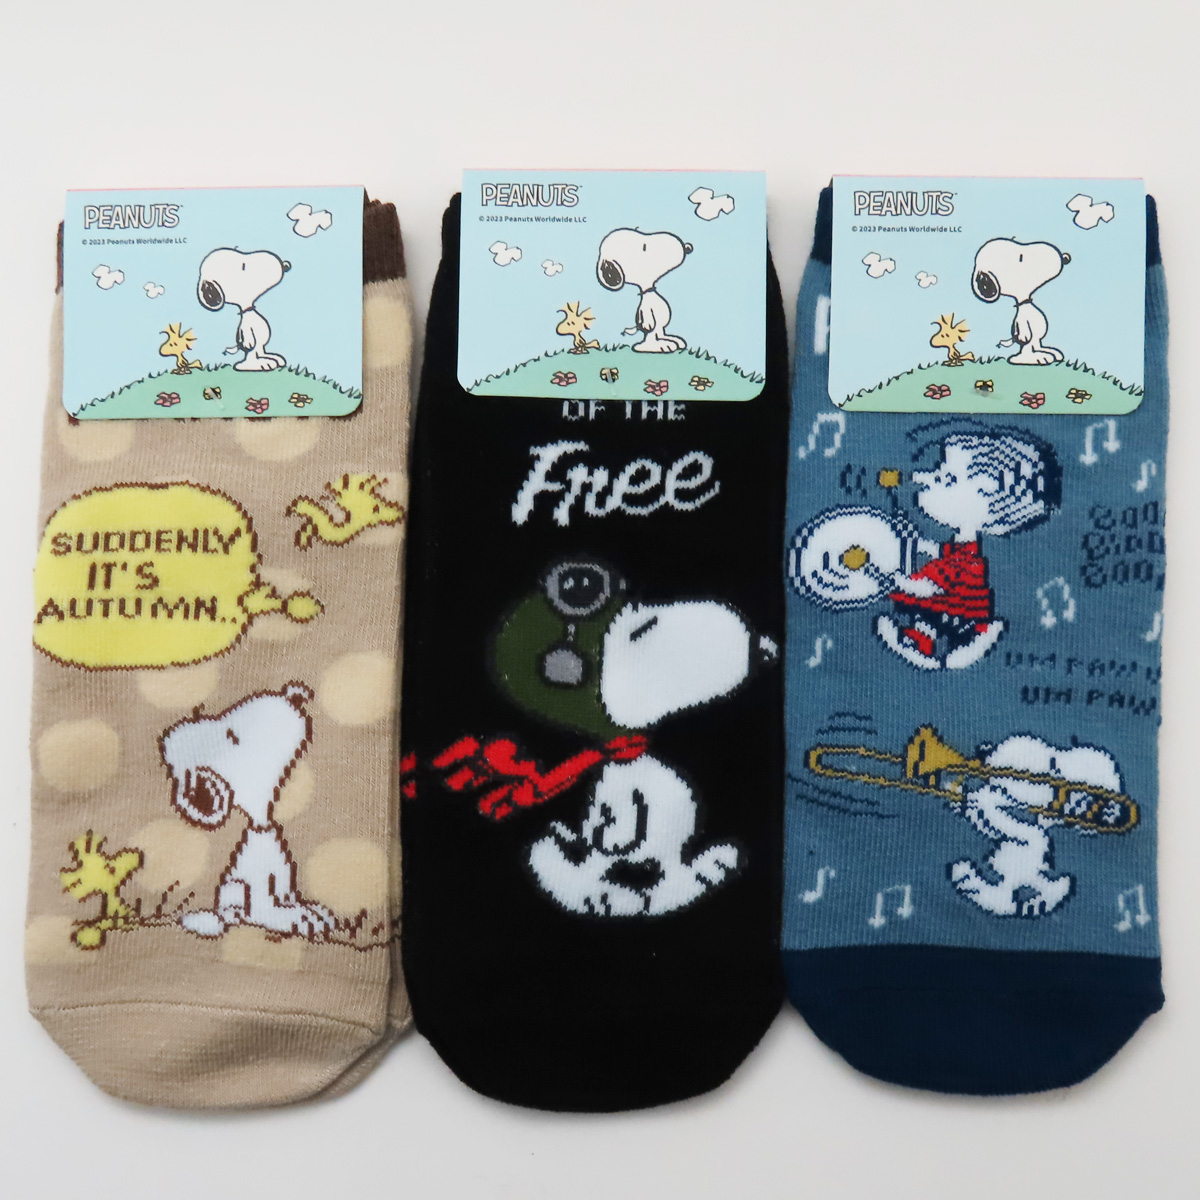  Snoopy носки носки Snoopy товары рост рост носки 6 пара 20~24cm до популярный герой бесплатная доставка сверхнизкая цена 